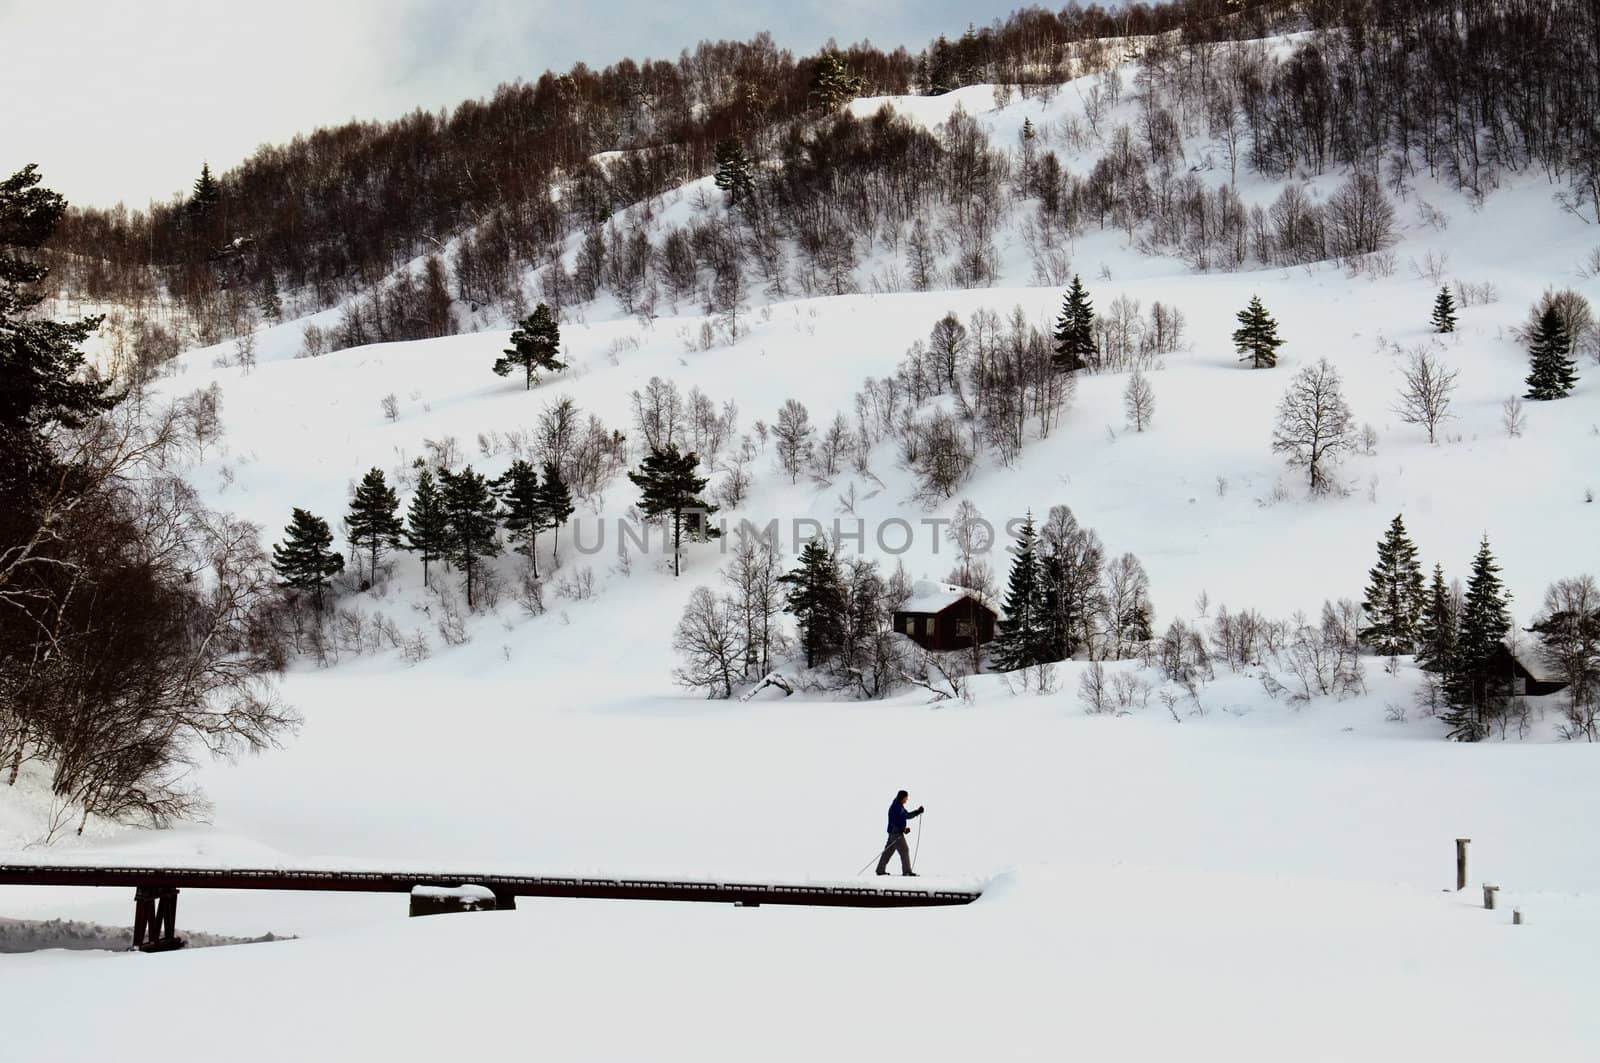 A single skier in a winter landscape